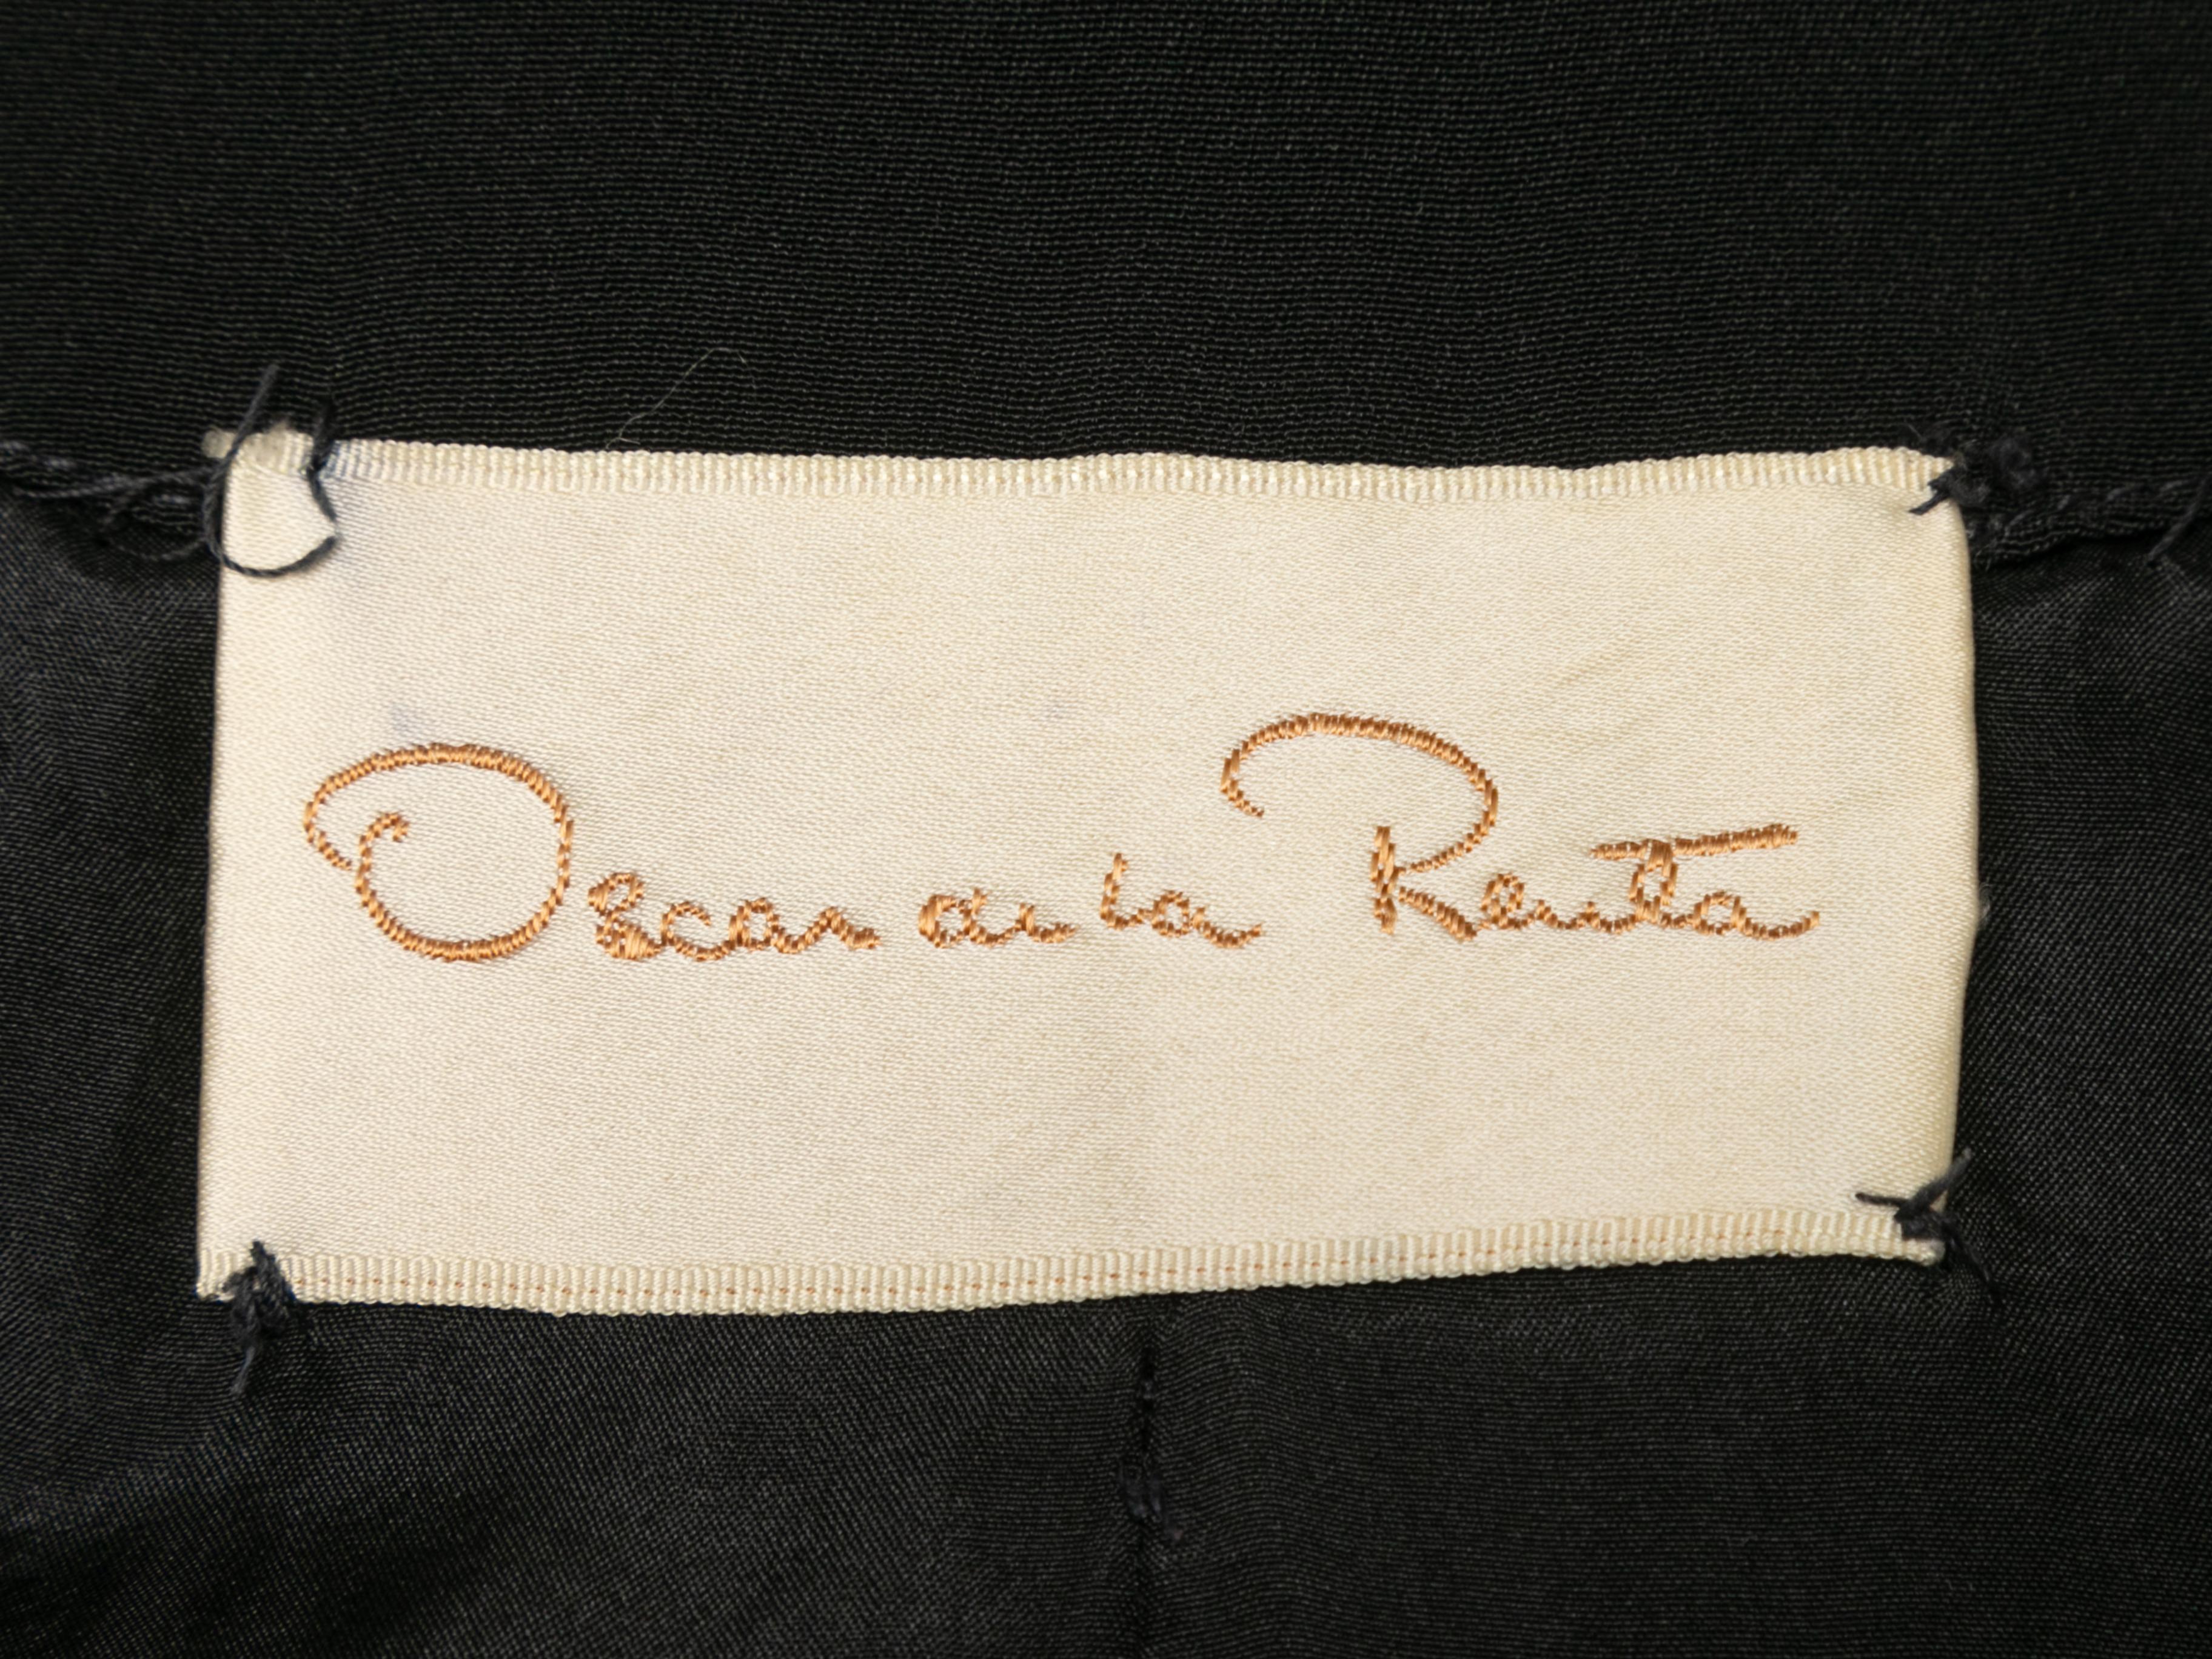 Schwarzes kurzärmeliges Kleid von Oscar de la Renta. Rüschenbesatz. V-Ausschnitt. Reißverschluss in der vorderen Mitte. 32